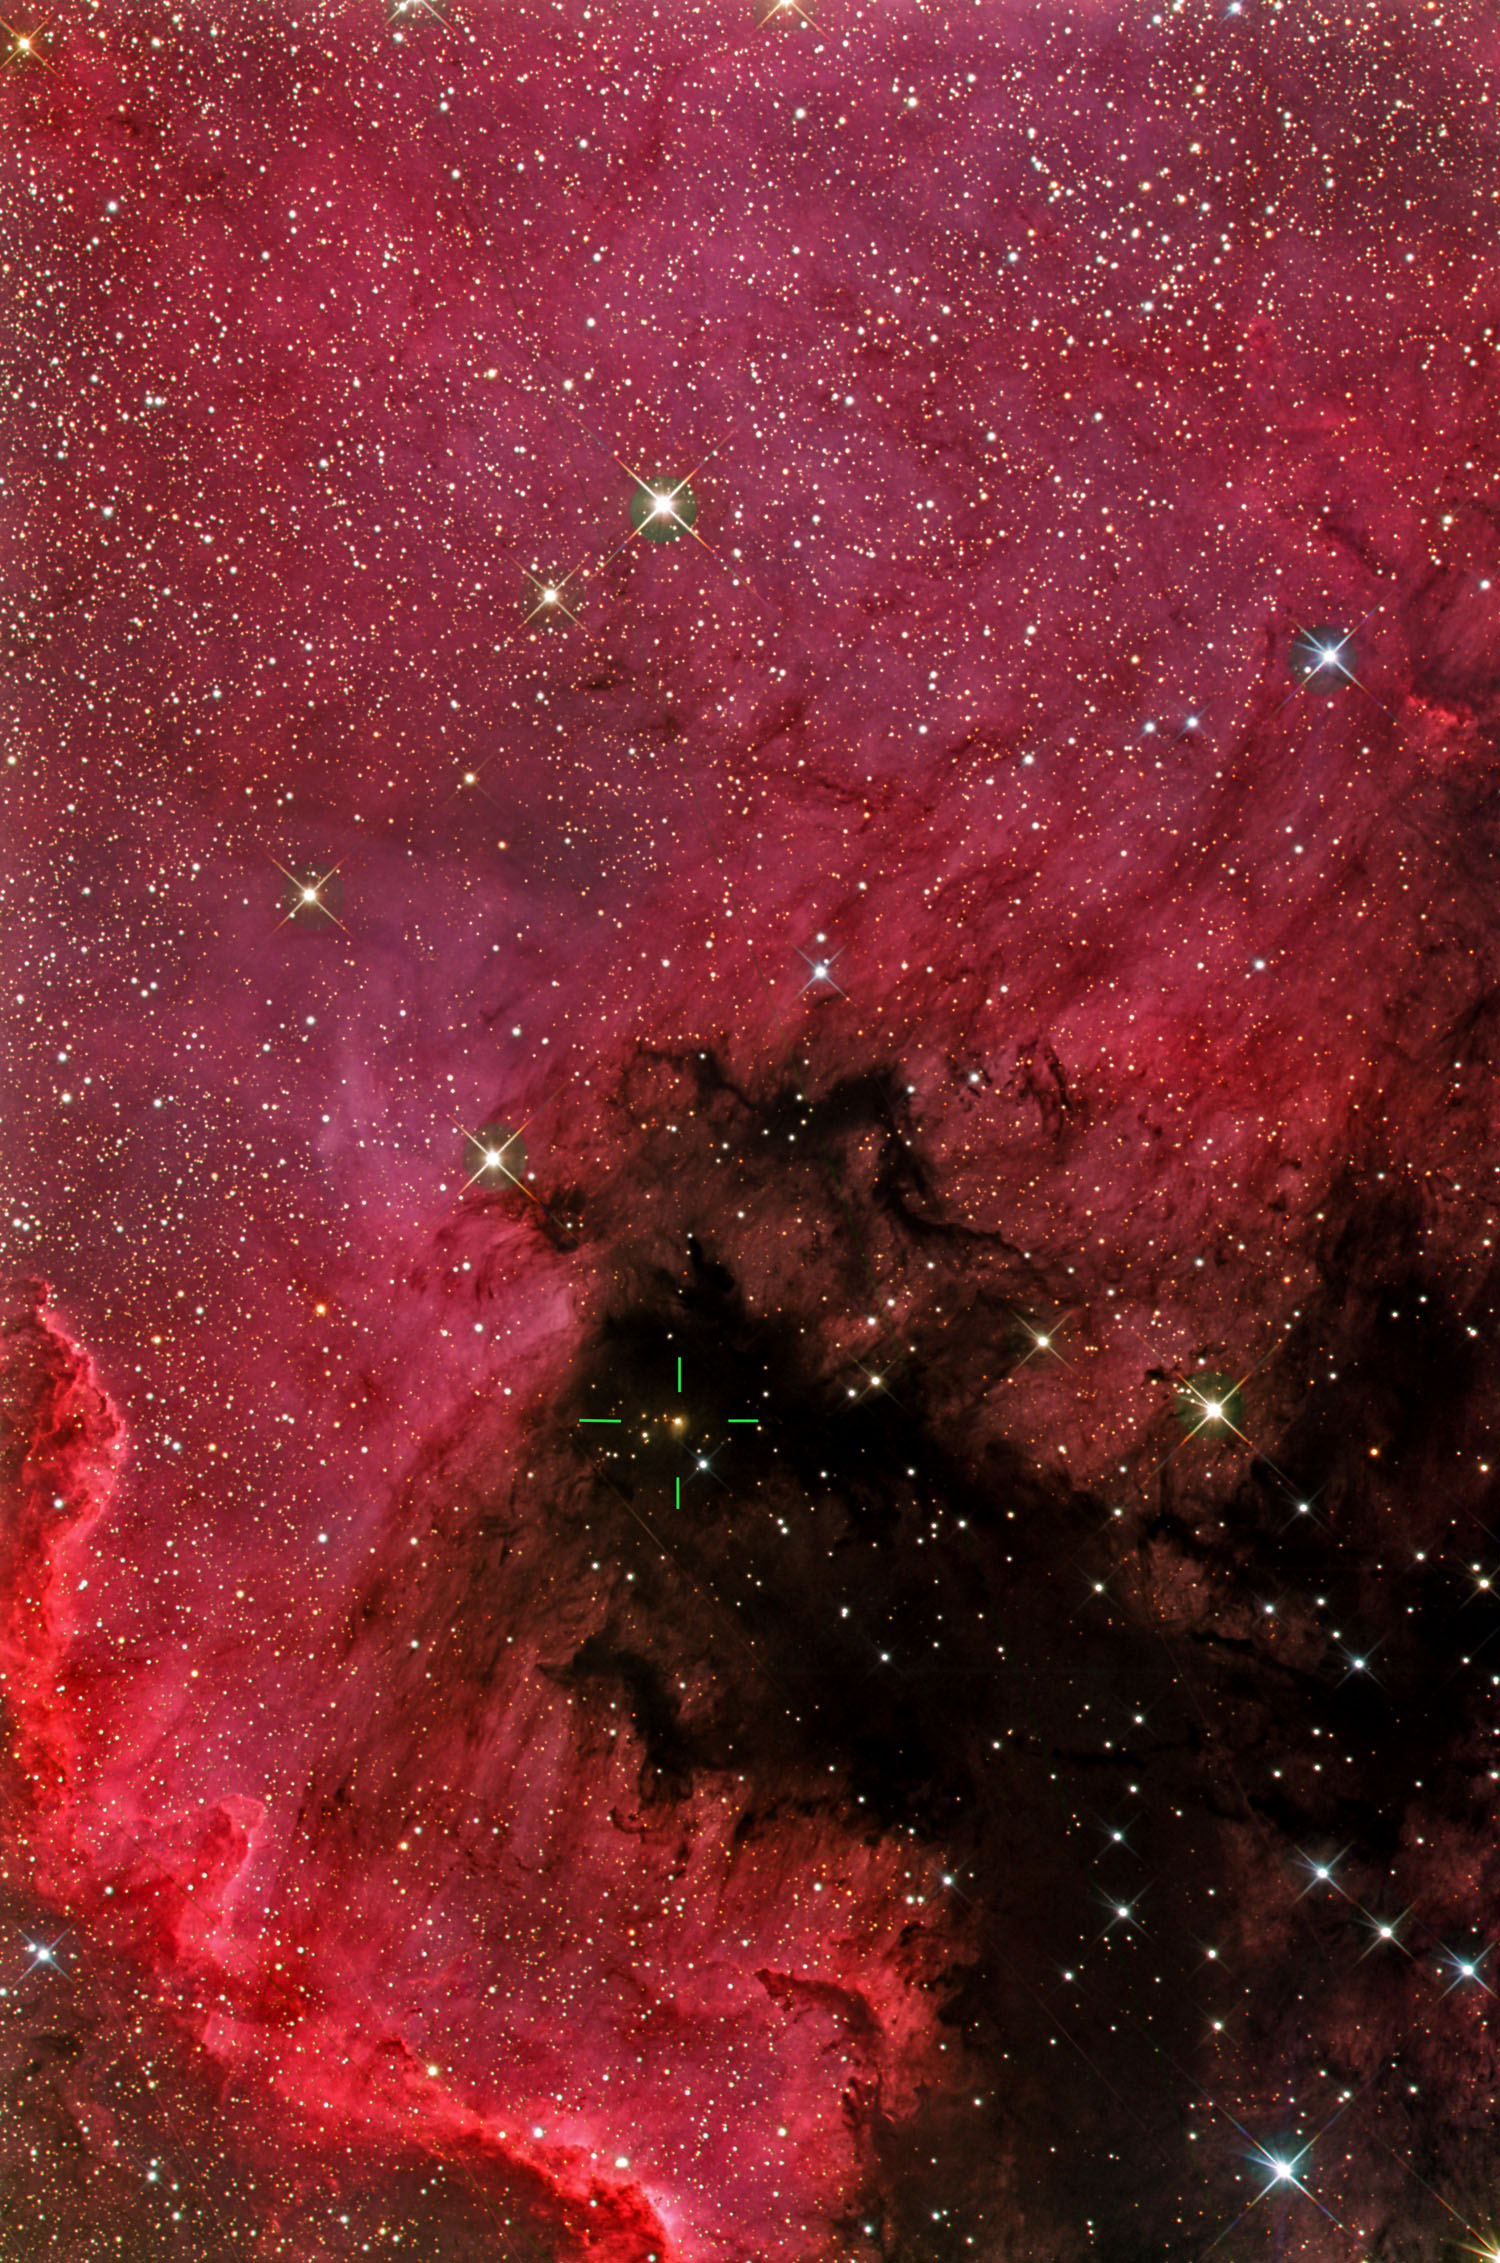 HaLRGB_New nebula around V2493Cyg_klein